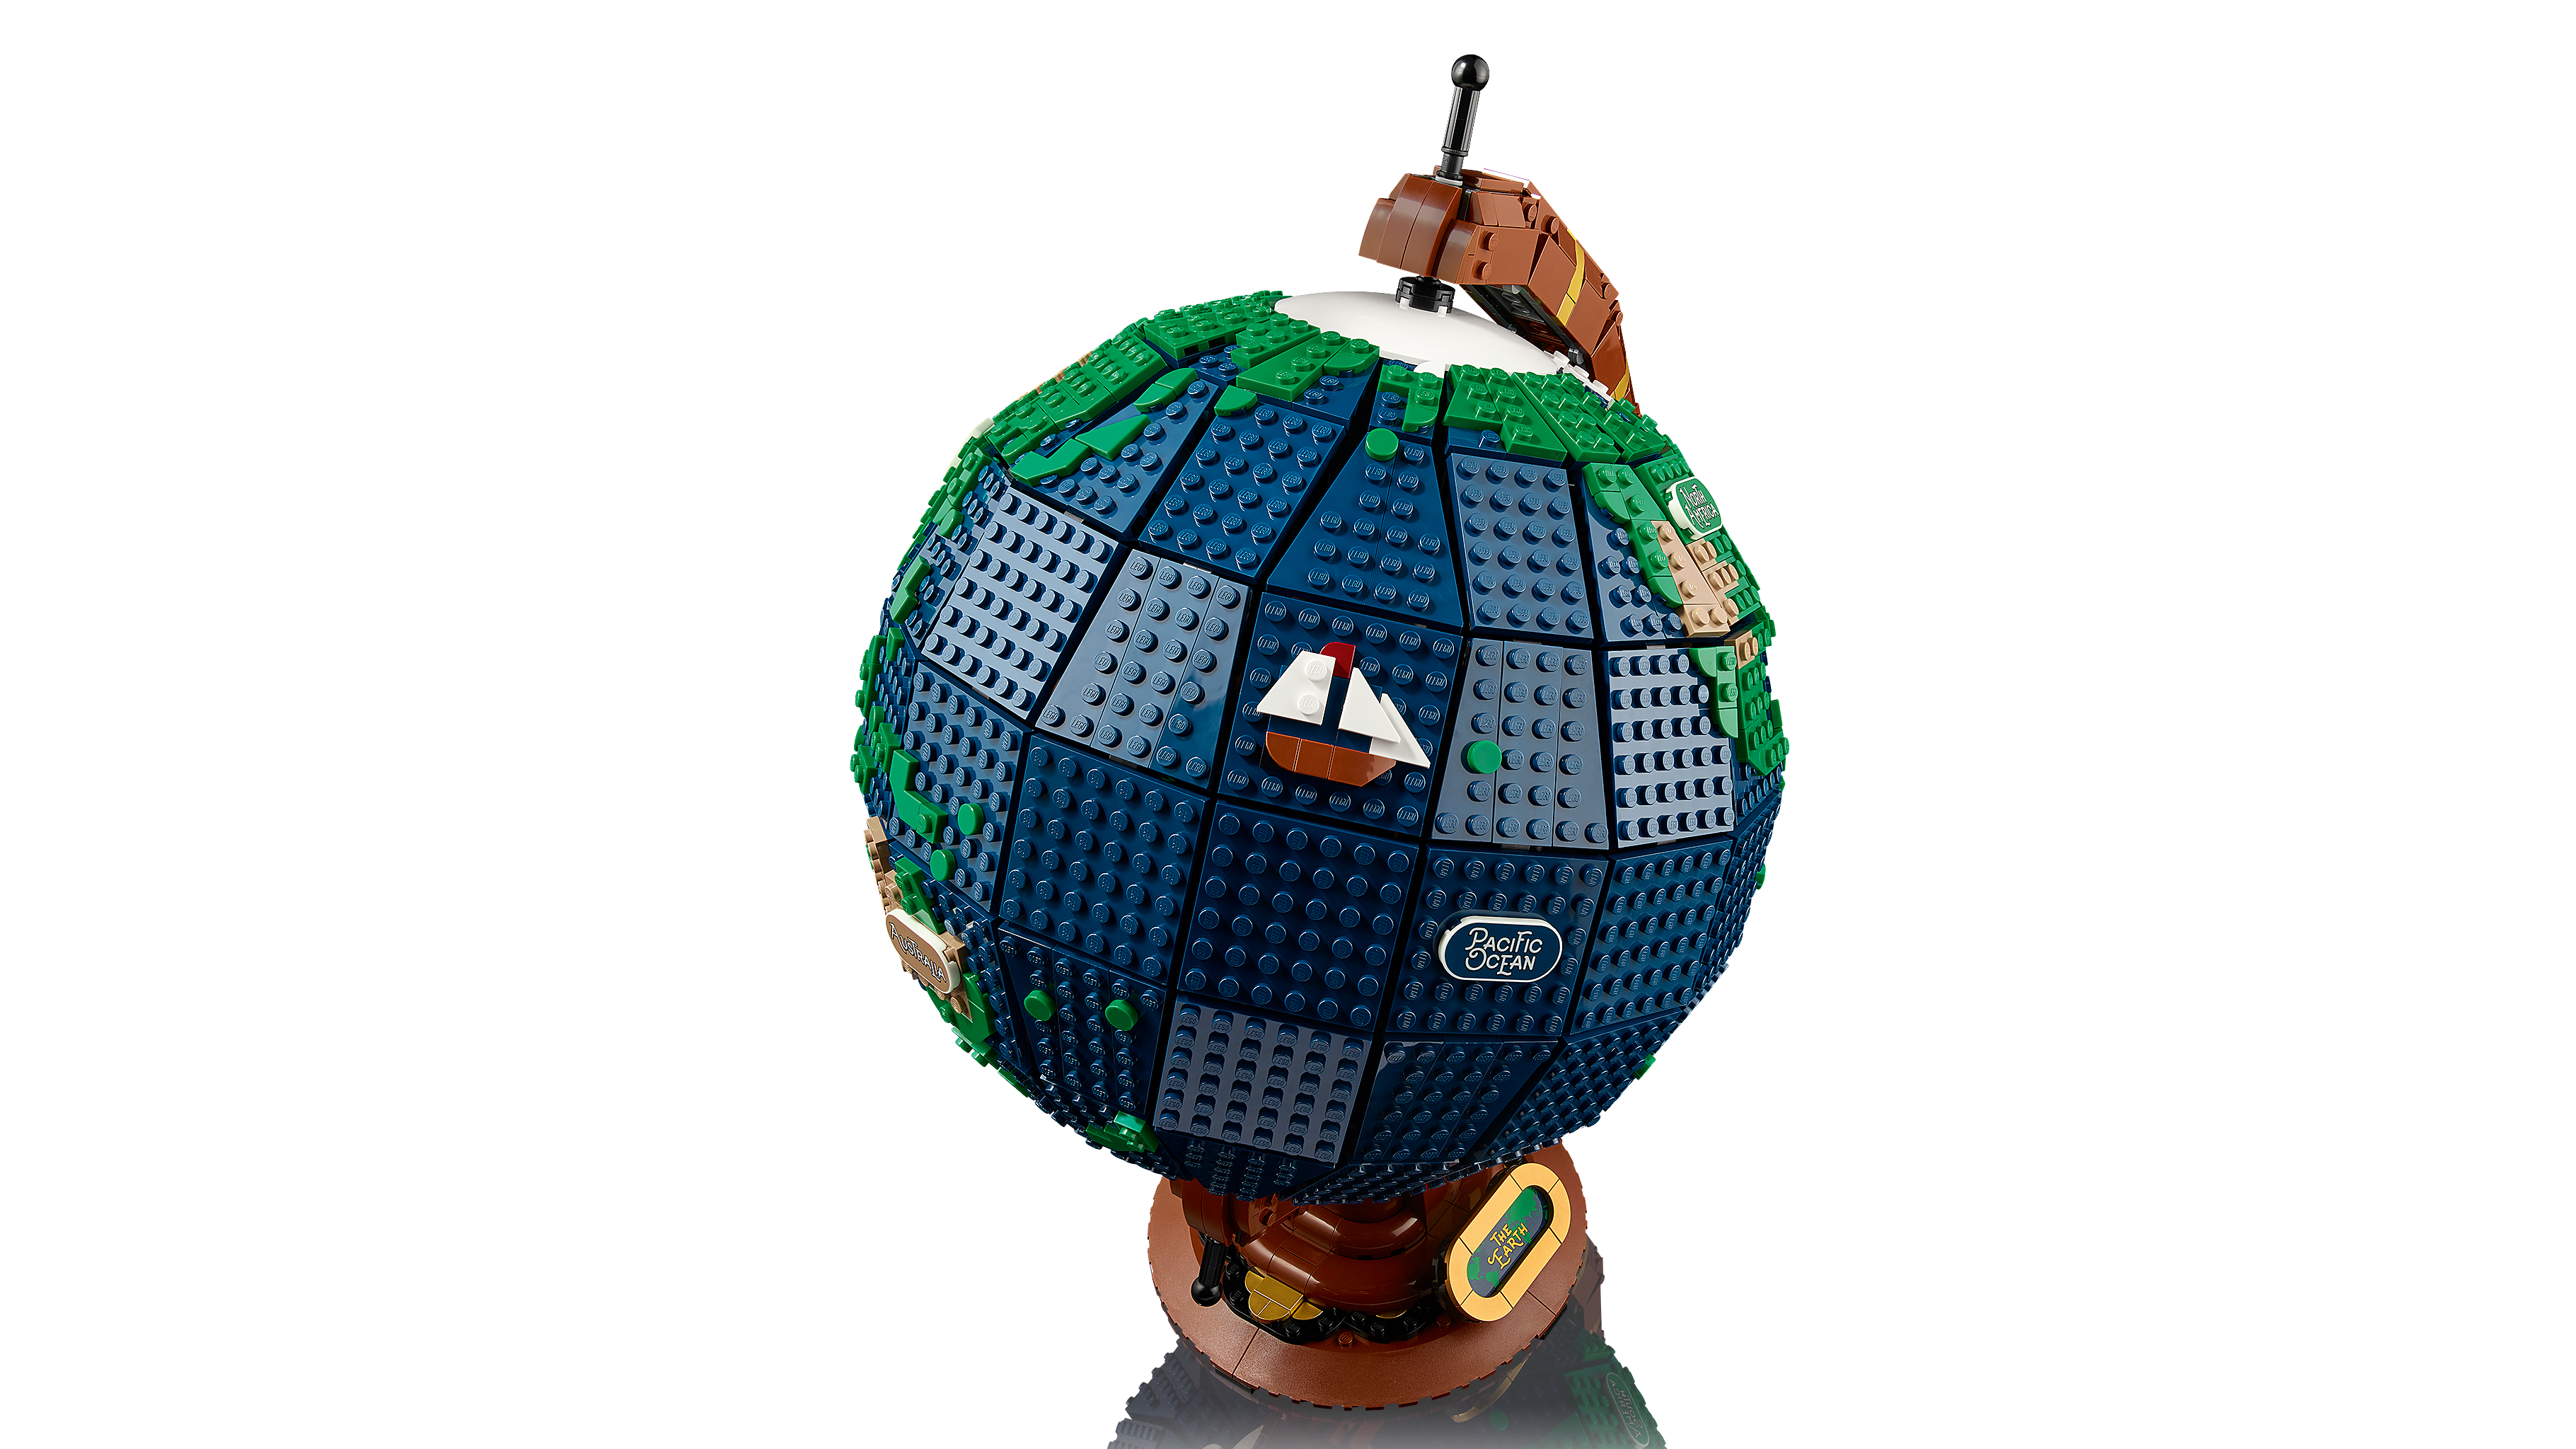 LEGO Ideas Reveals Globe Set - FBTB